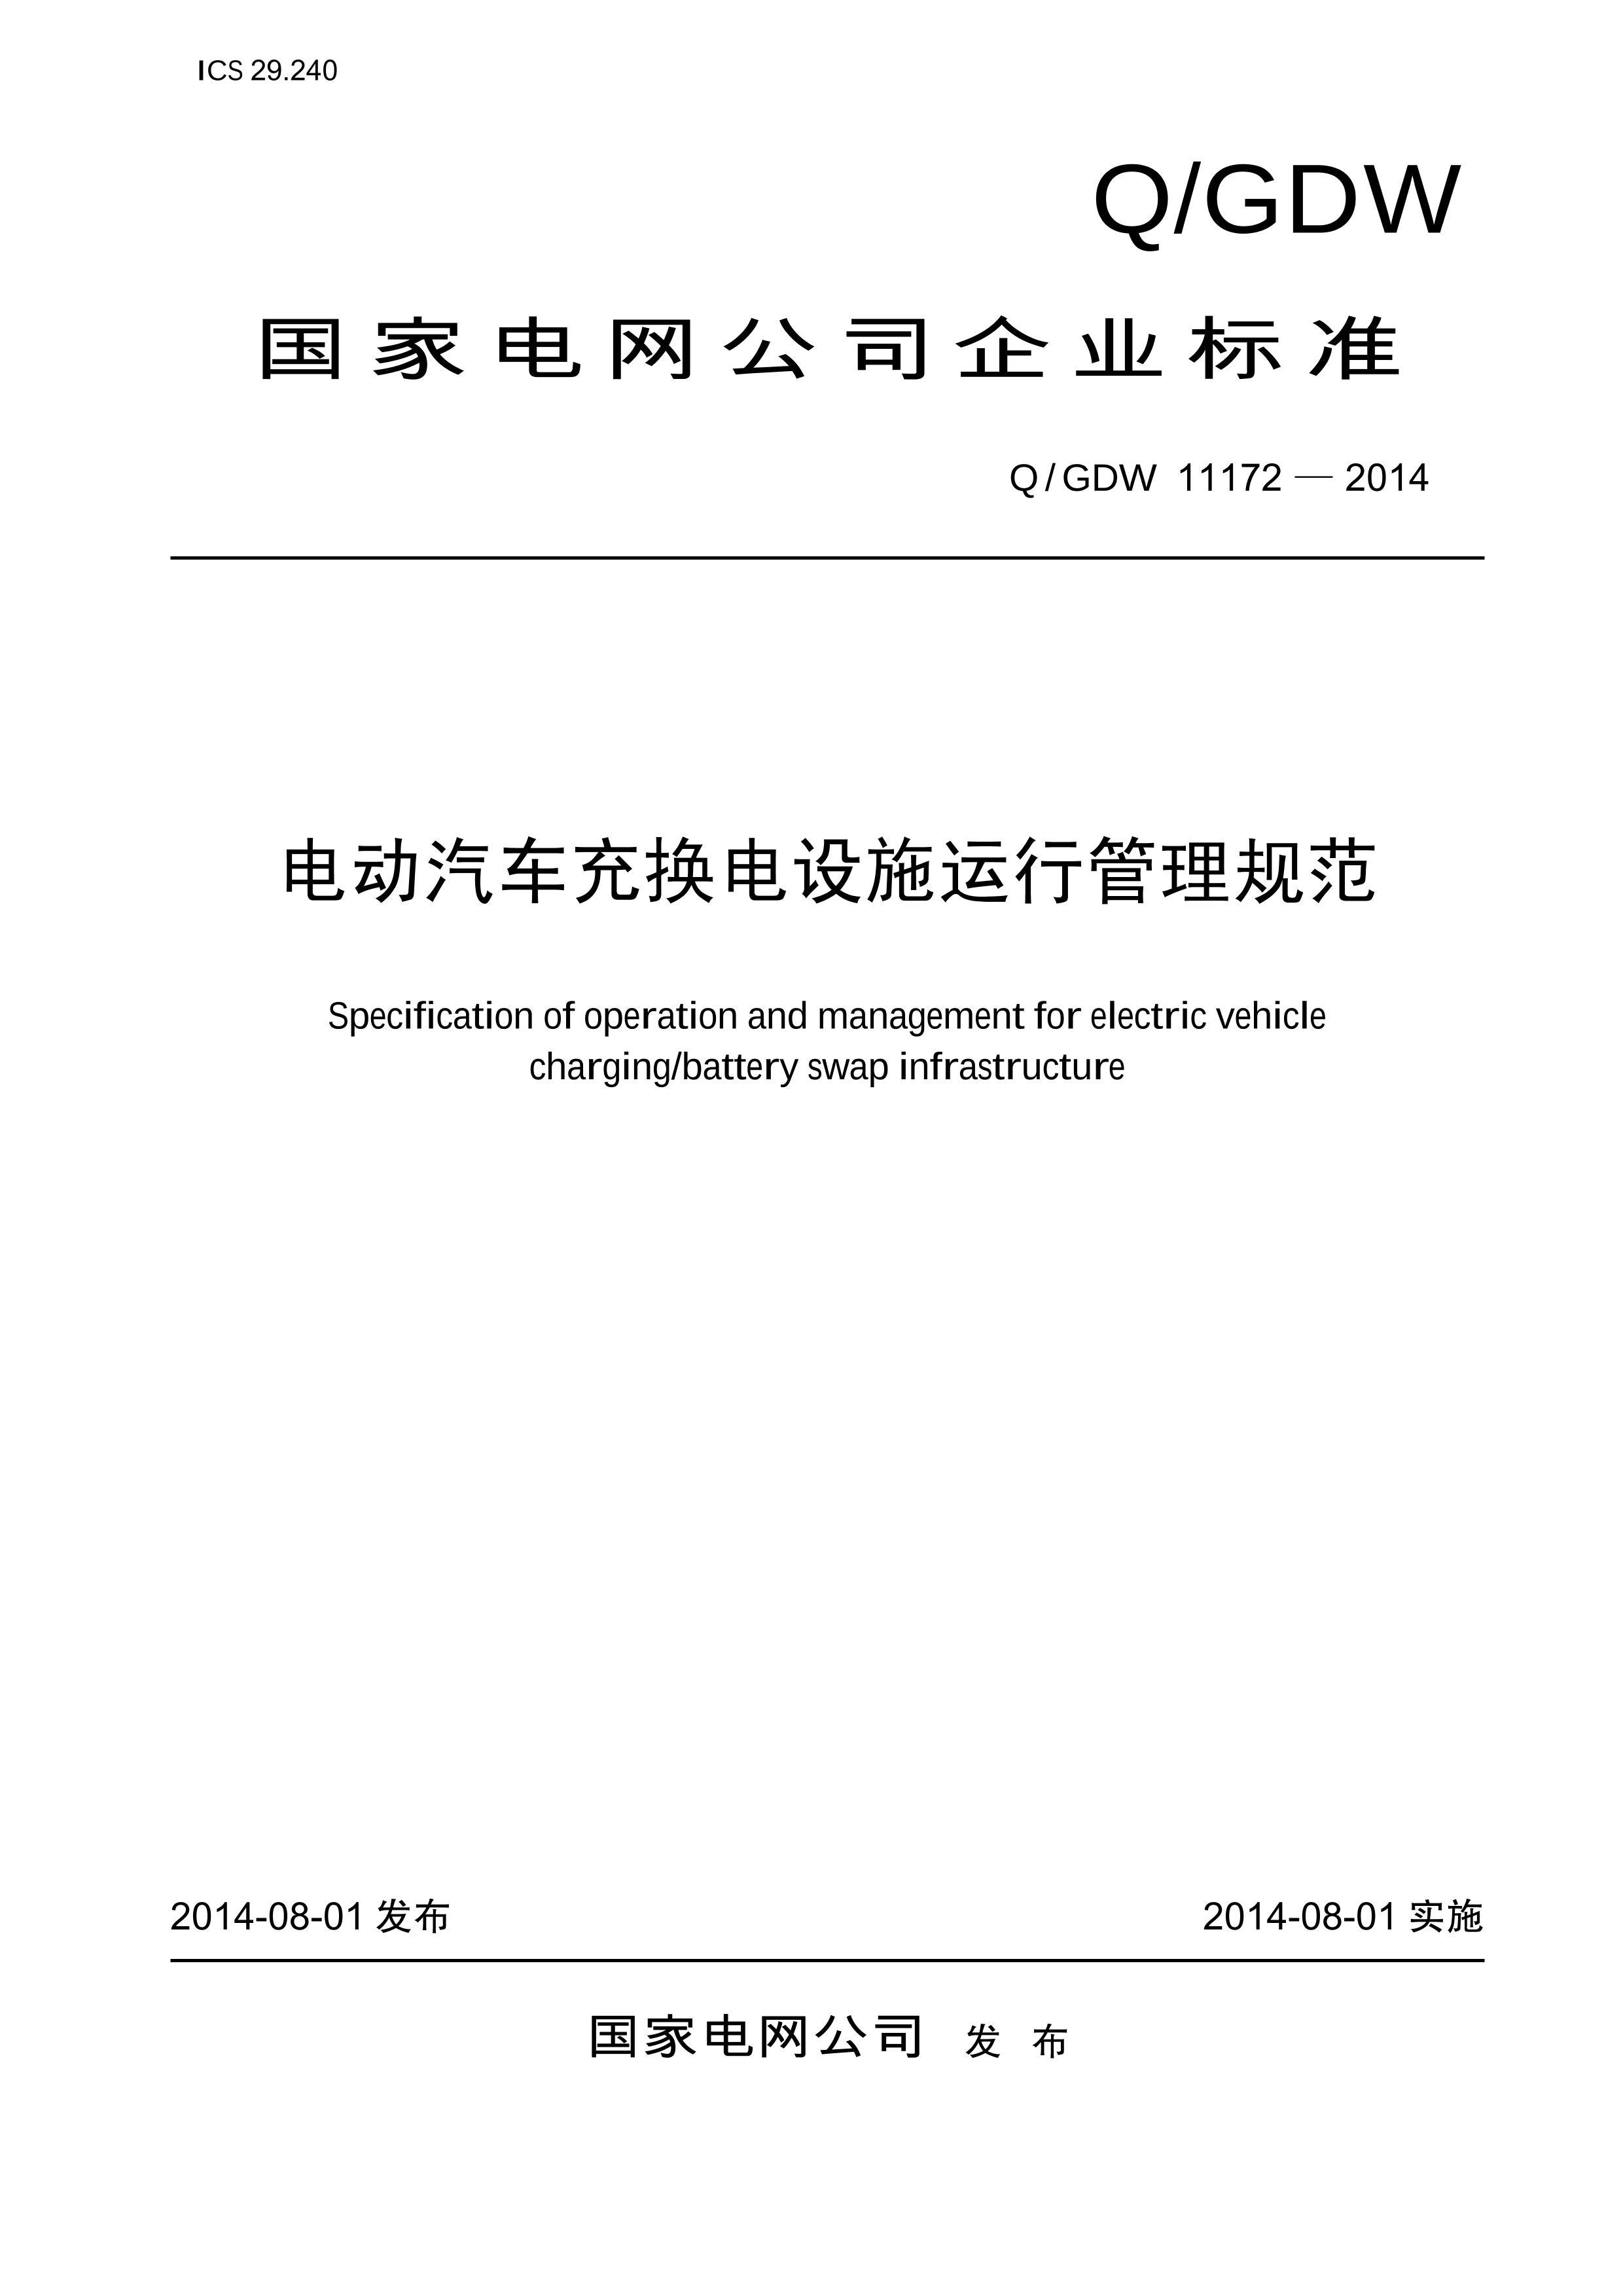 QGDW 11172-2014 綯任ʩй淶.PDF1ҳ